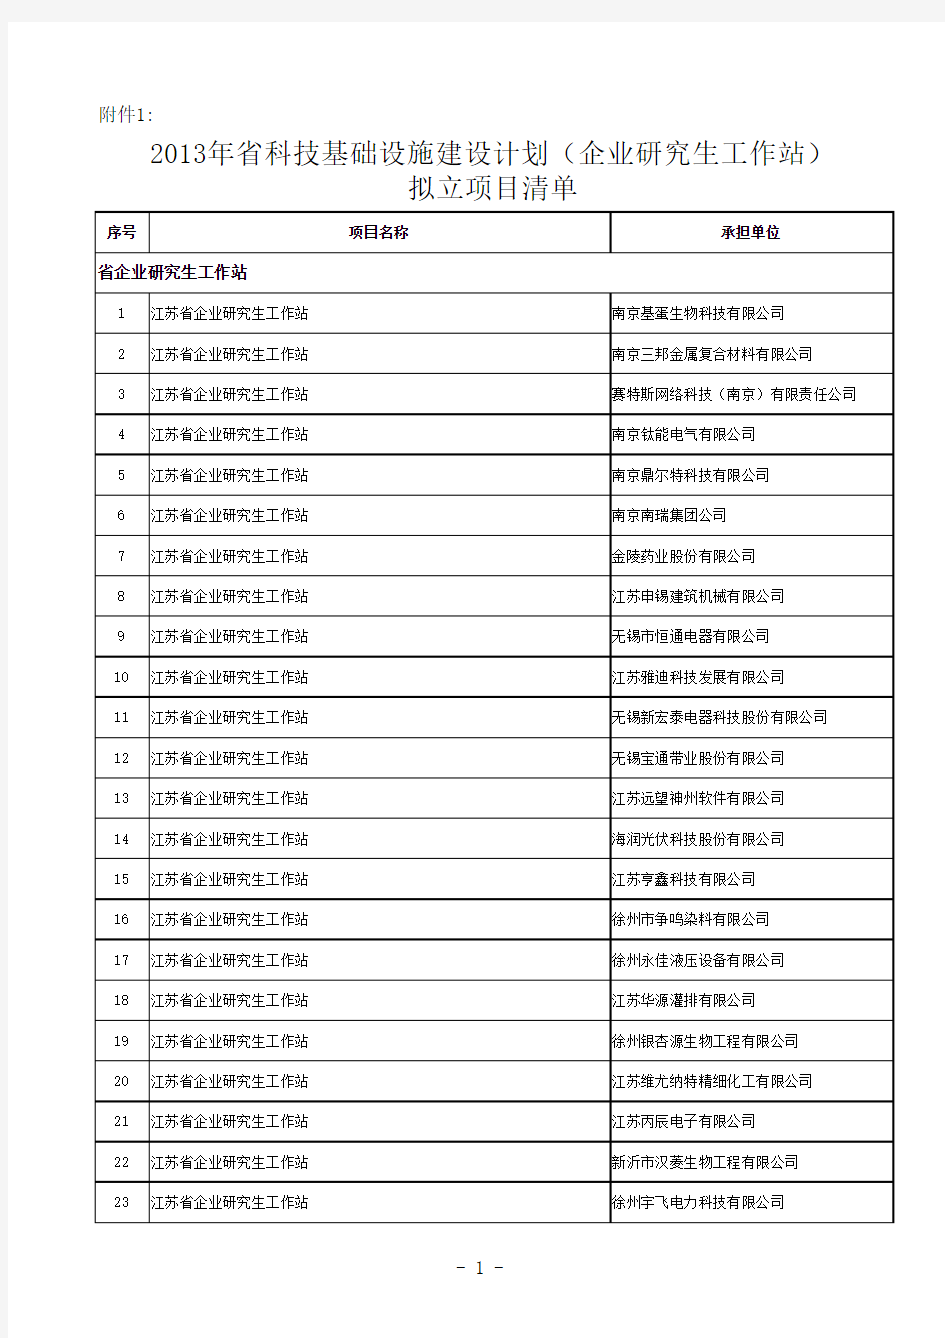 2013年江苏省科技基础设施建设计划(企业研究生工作站)拟立项目清单